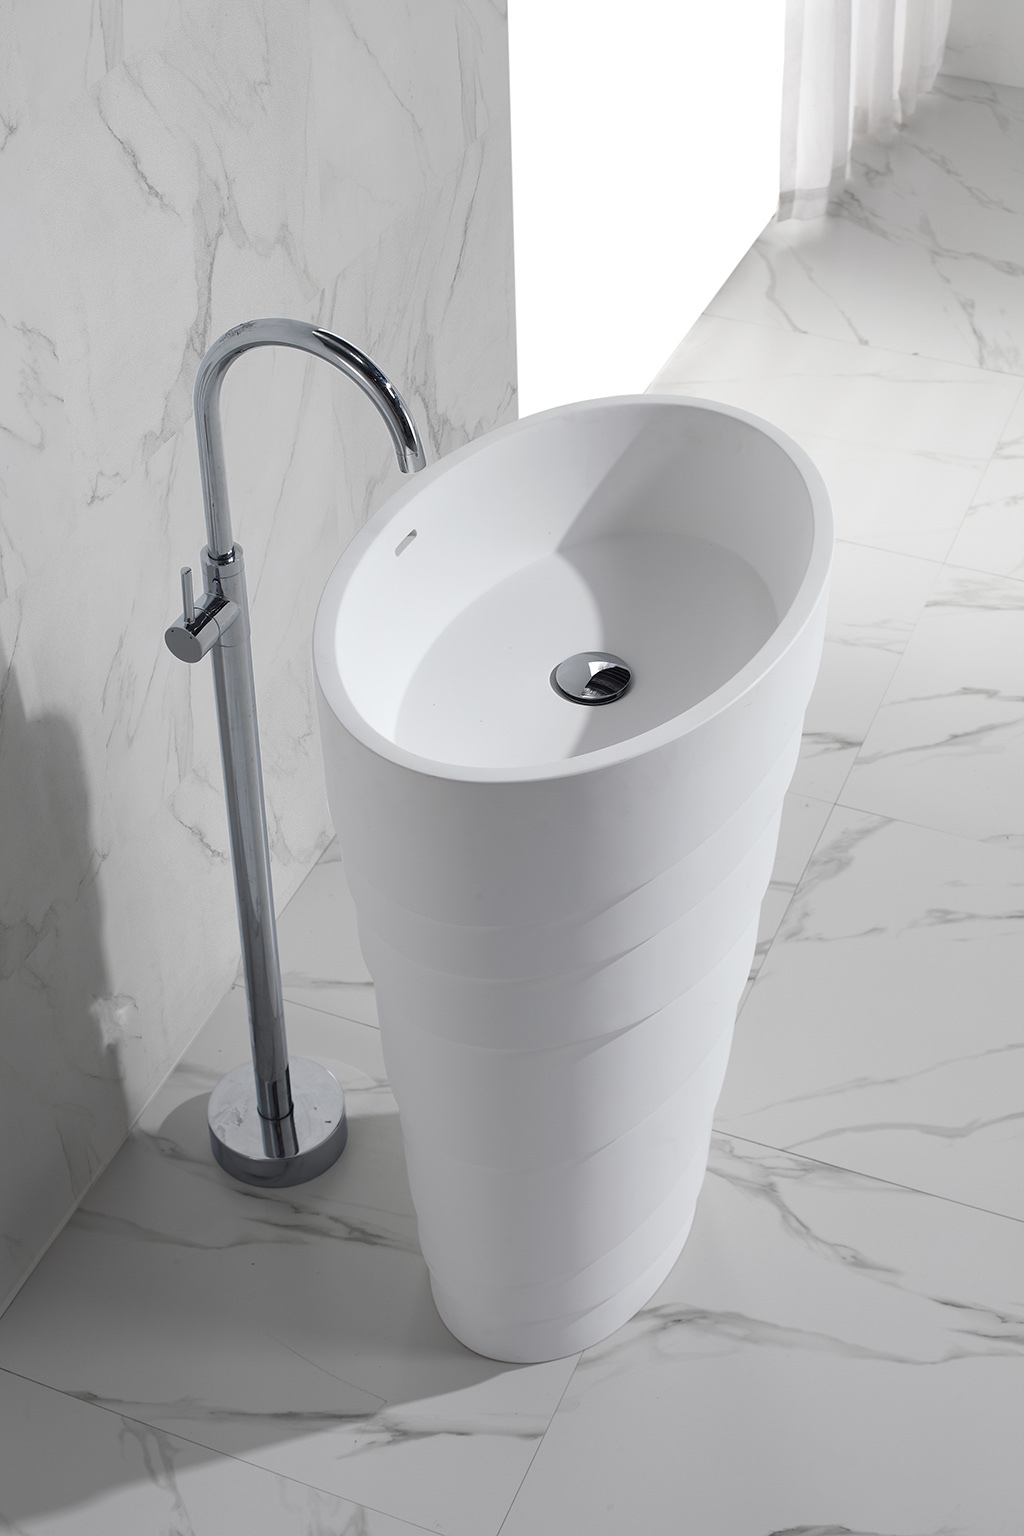 standard free standing wash basin manufacturer for bathroom KingKonree